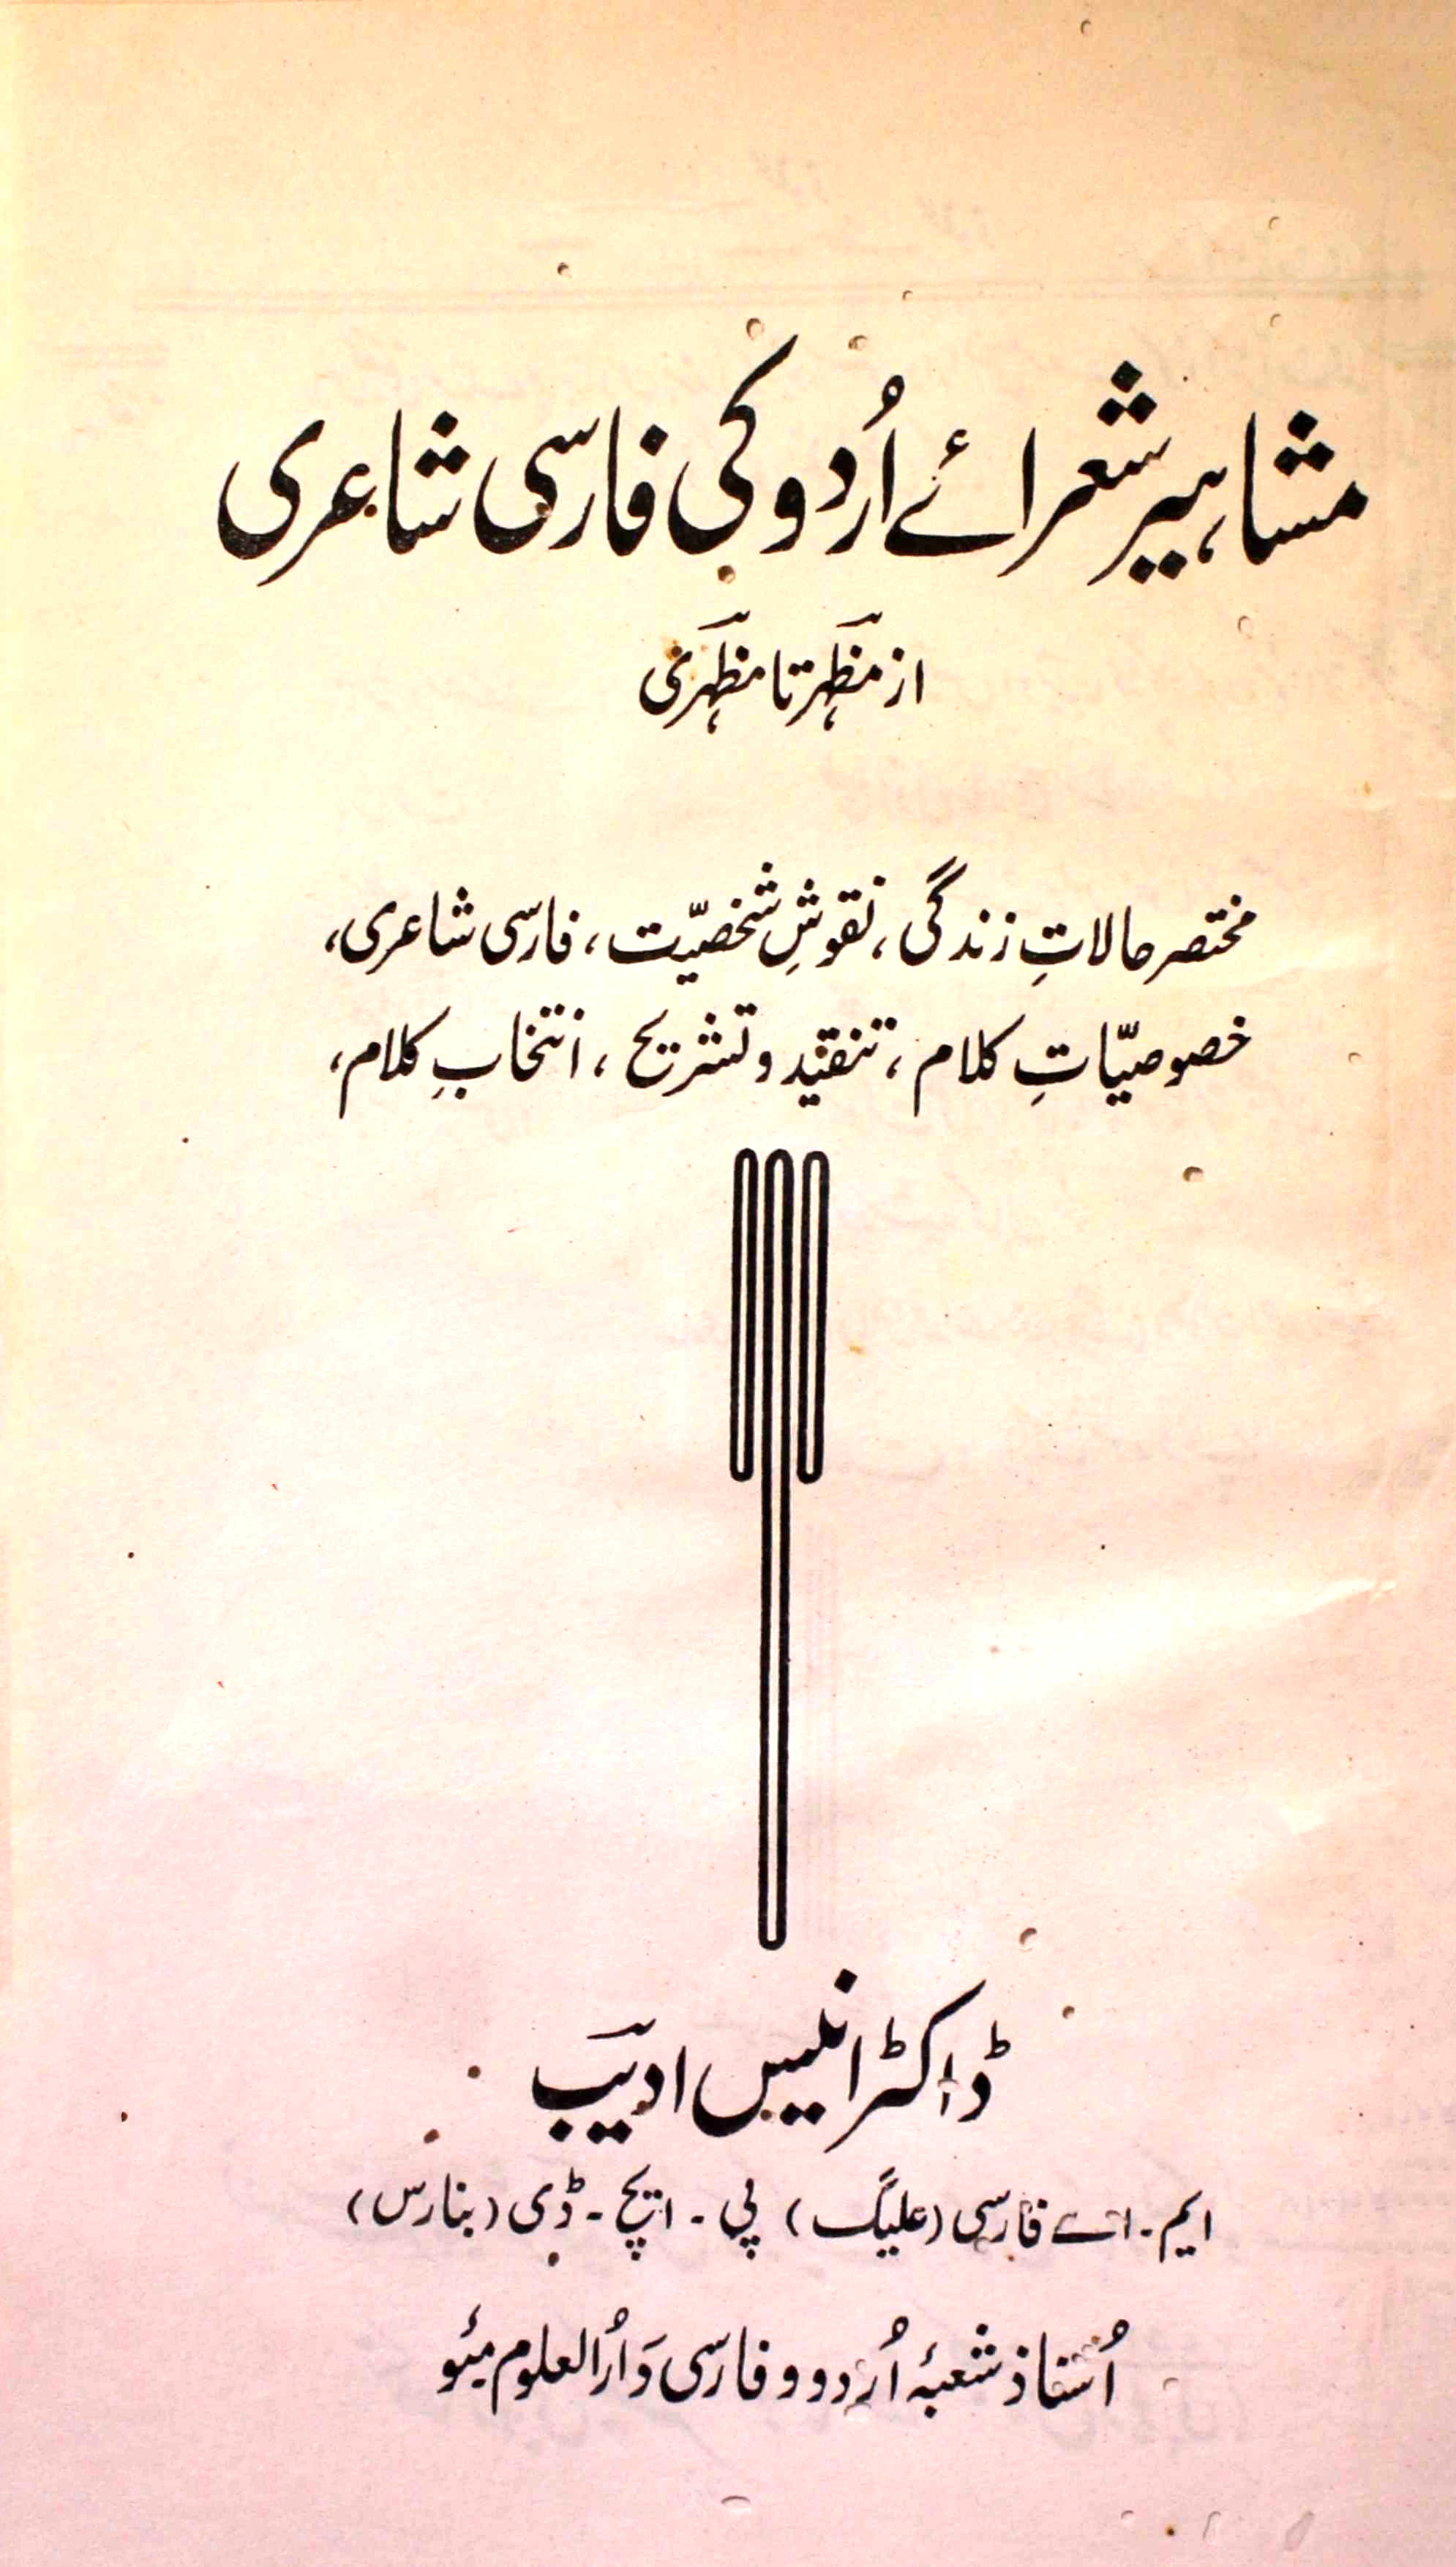 مشاہیر شعرائے اردو کی فارسی شاعری